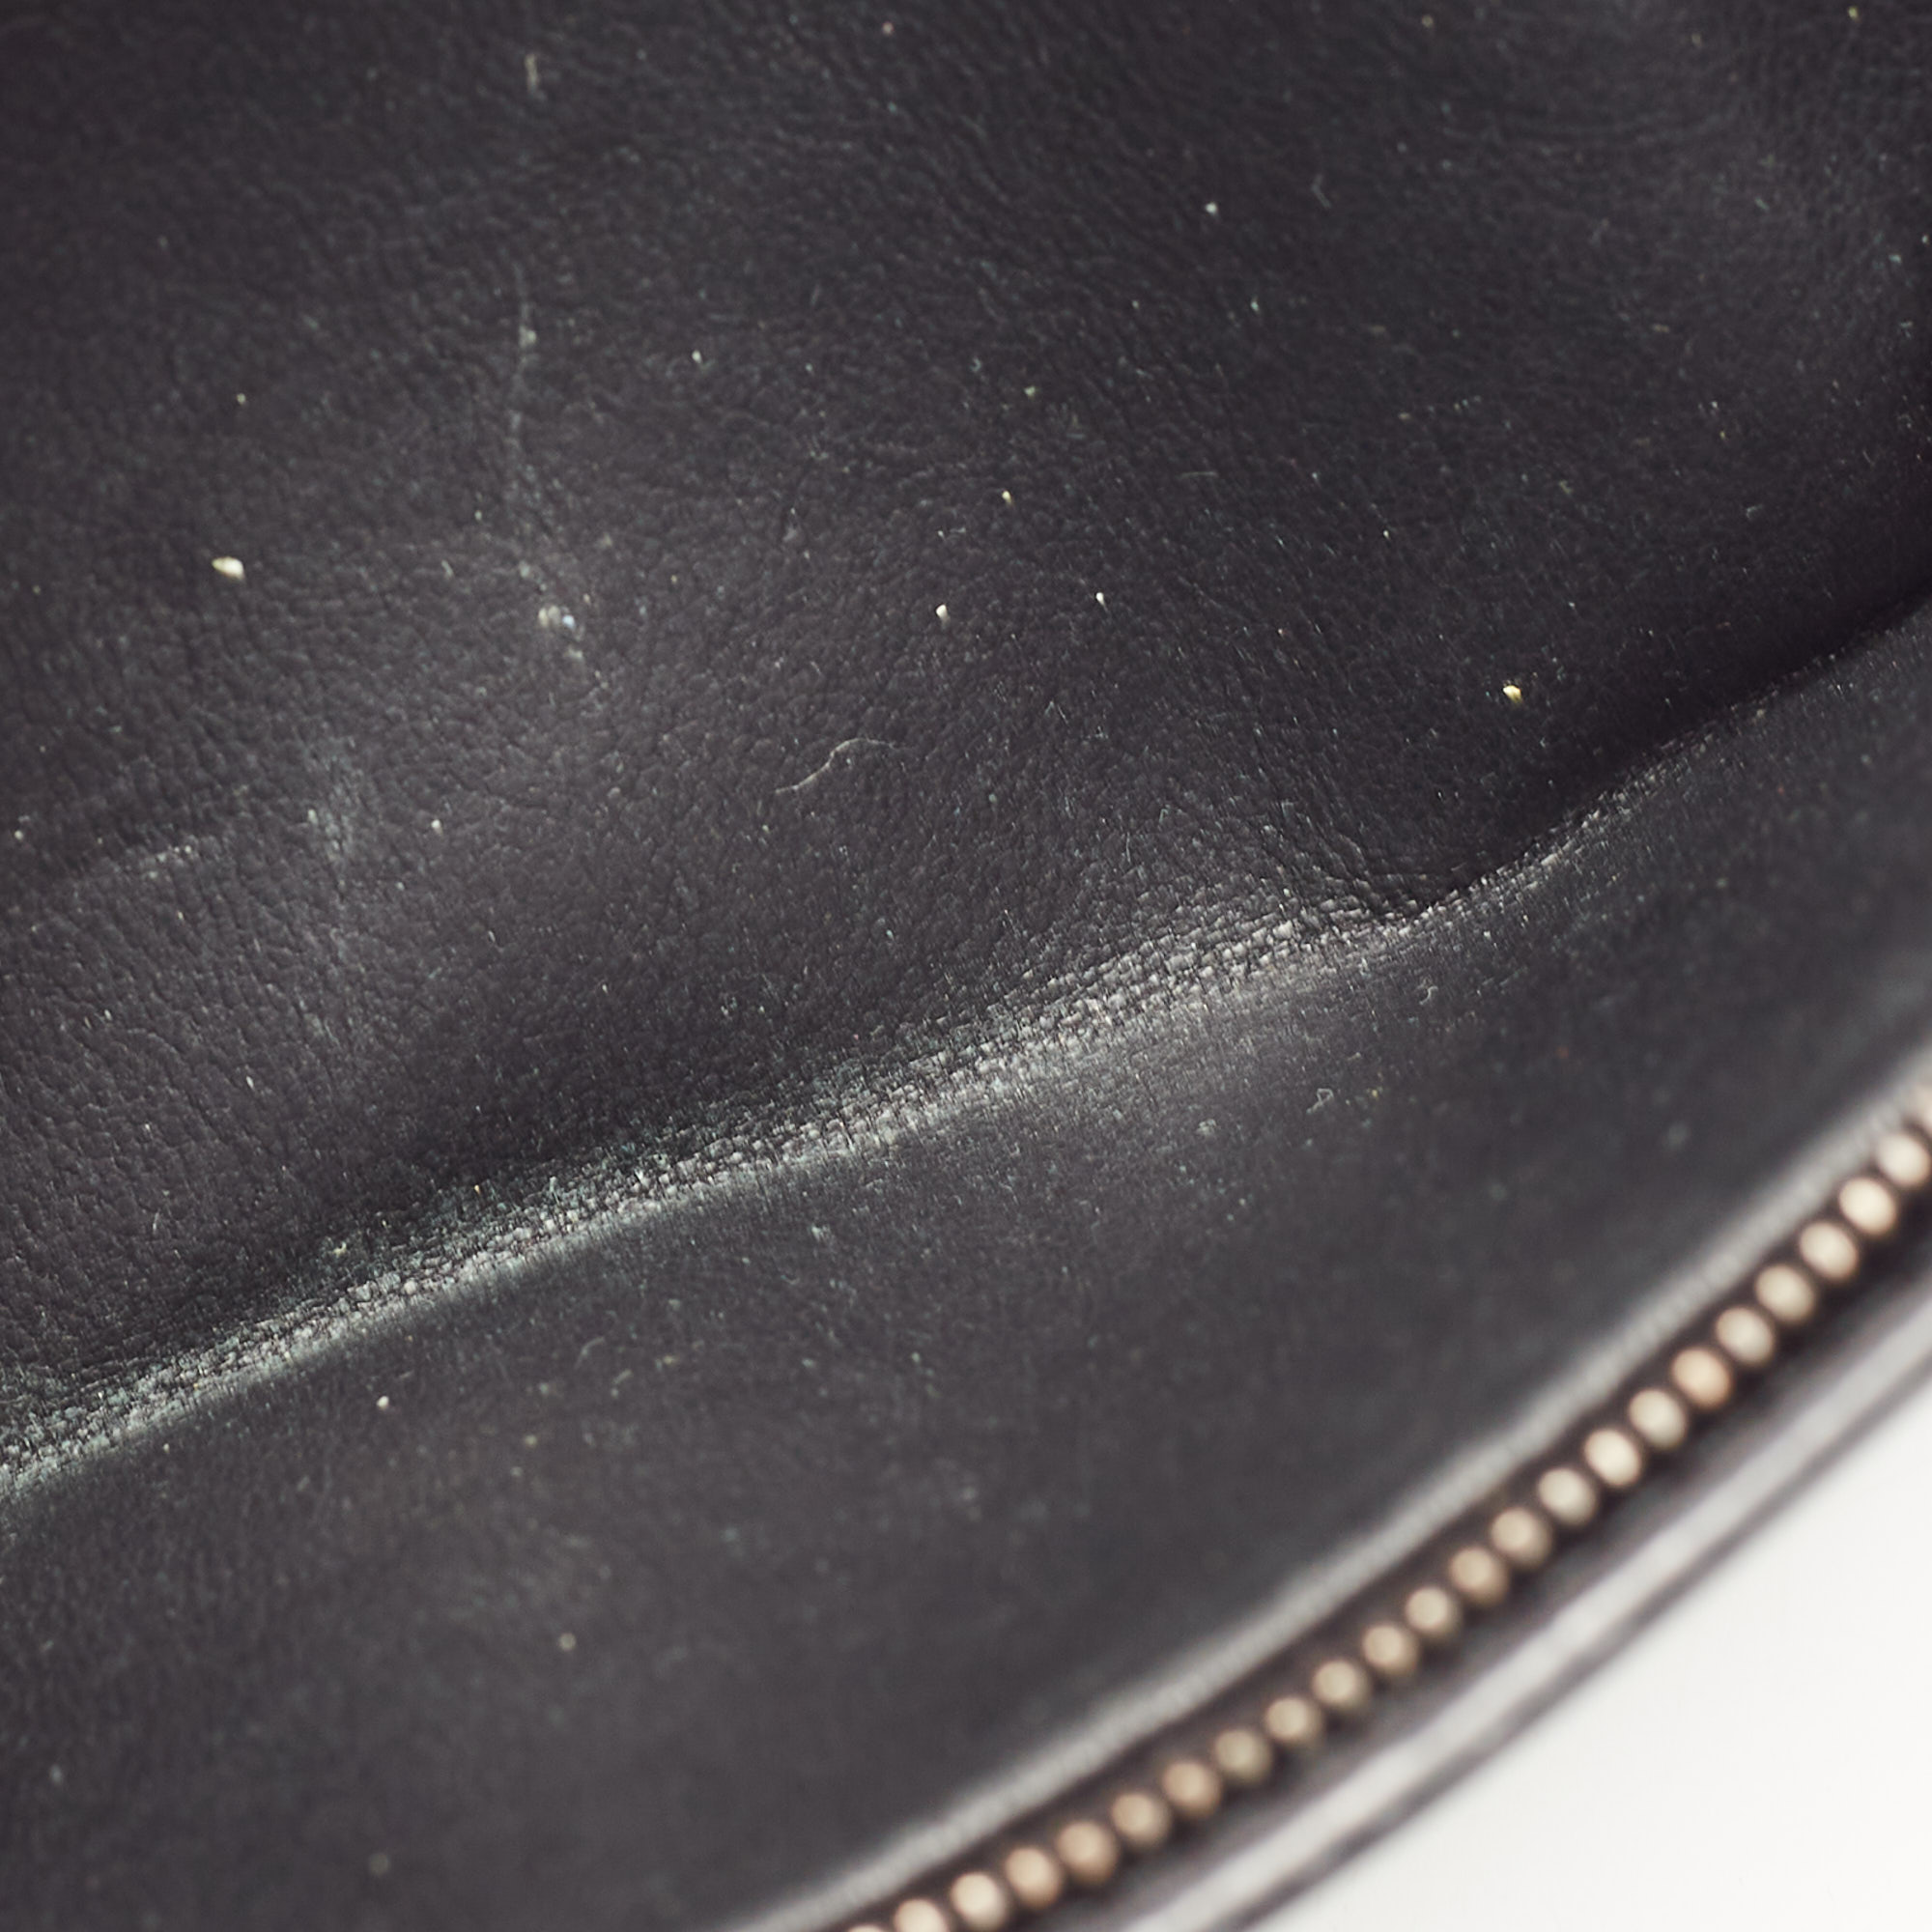 Bottega Veneta Black Intrecciato Leather Trifold French Wallet